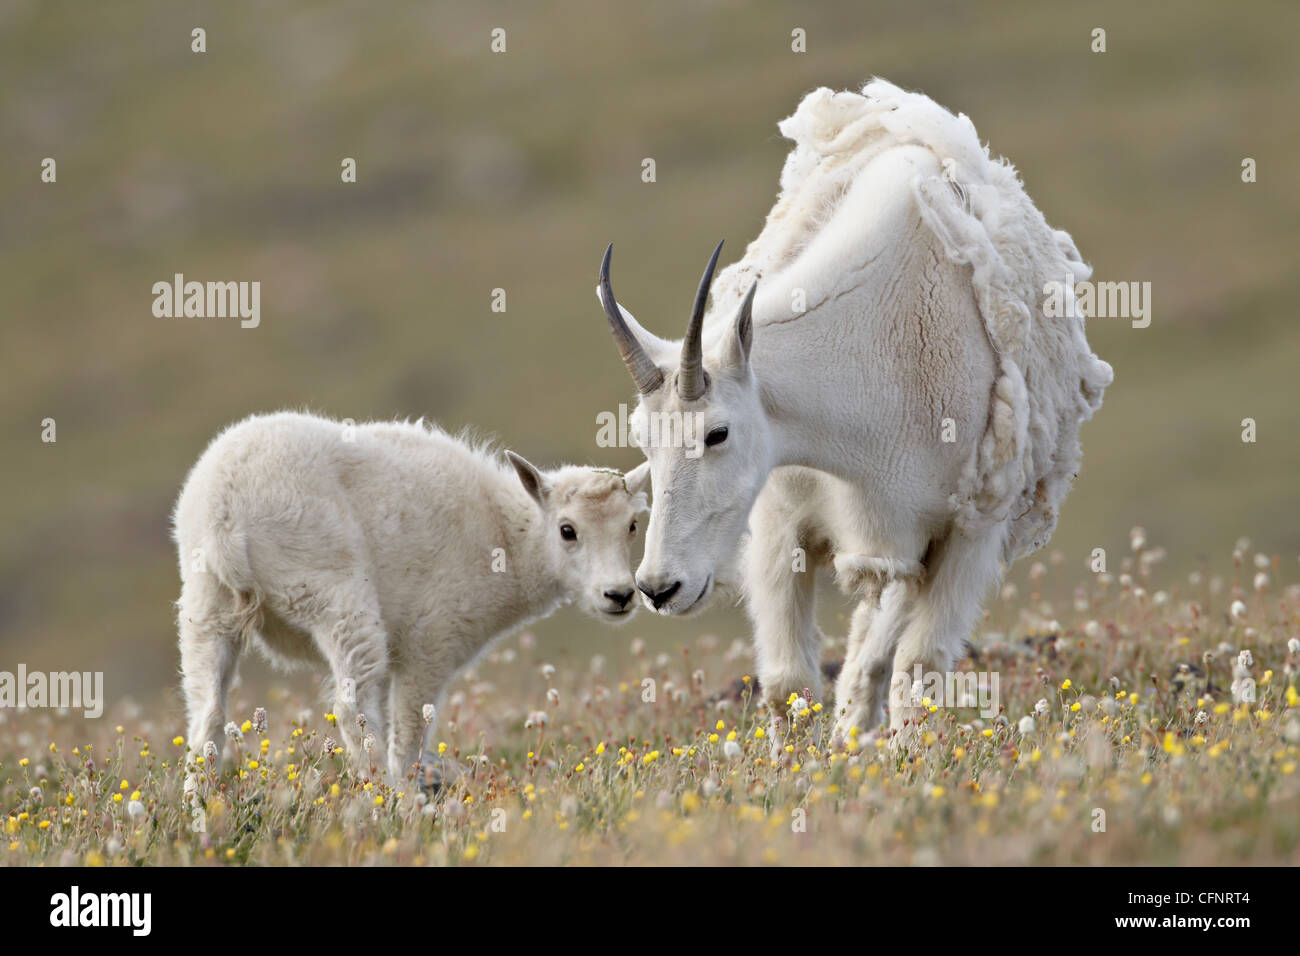 La chèvre de montagne (Oreamnos americanus) nounou et kid, forêt nationale de Shoshone, Wyoming, États-Unis d'Amérique, Amérique du Nord Banque D'Images